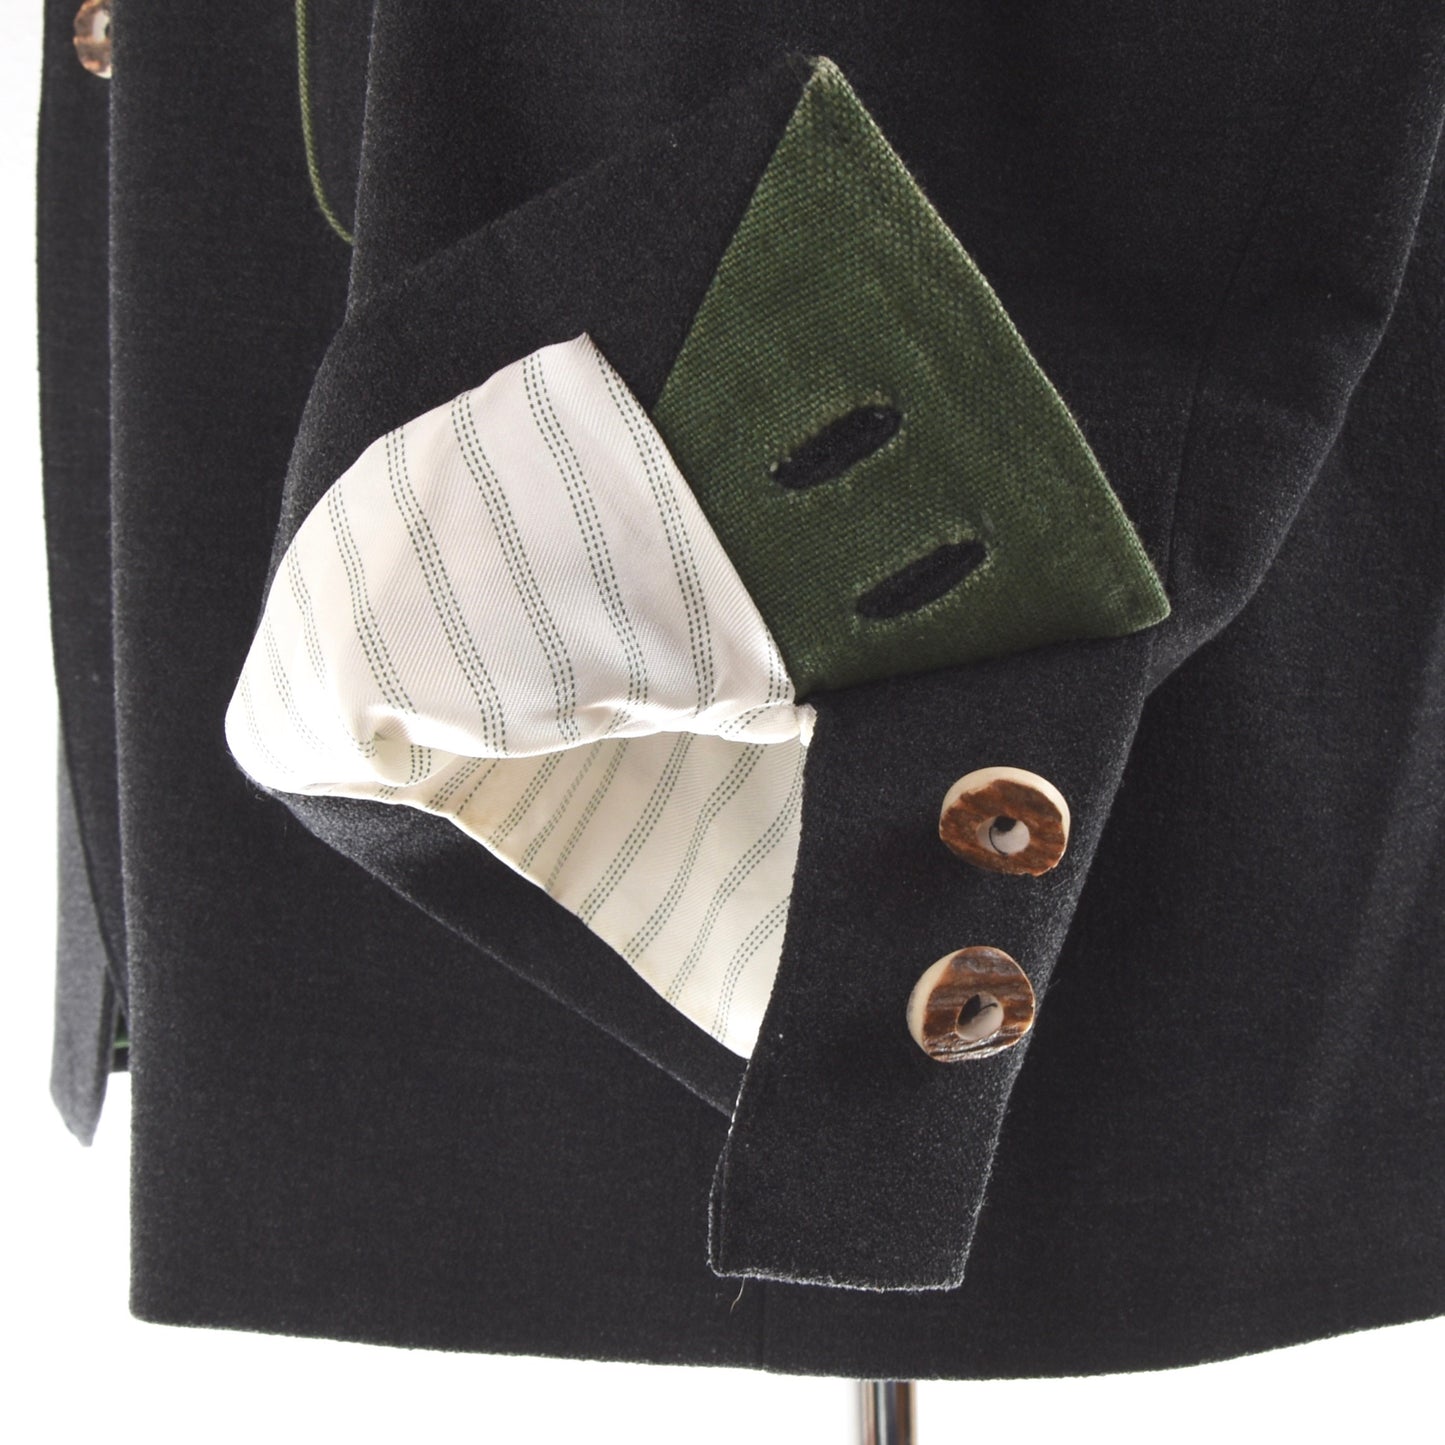 Gössl Wool Janker/Jacket Size 54 - Grey